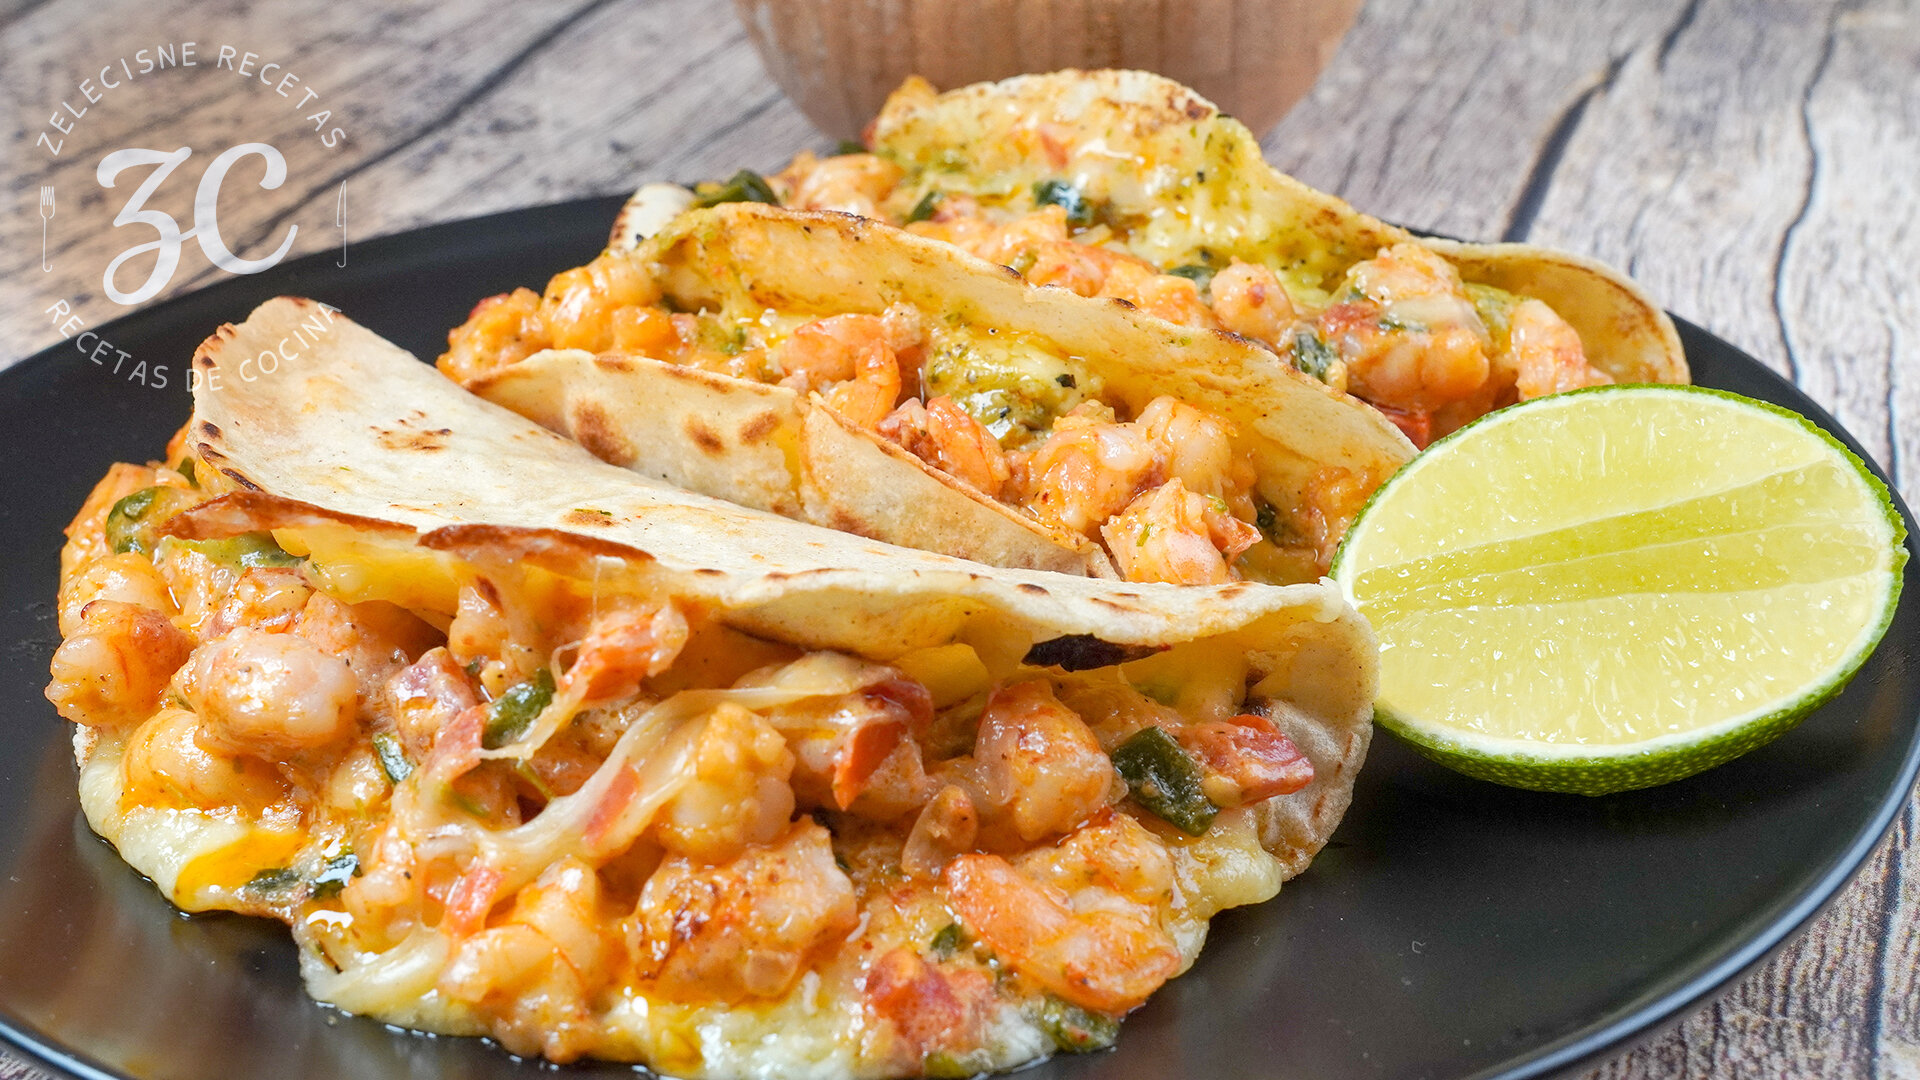 Deliciosos Tacos Gobernador — ZELECISNE